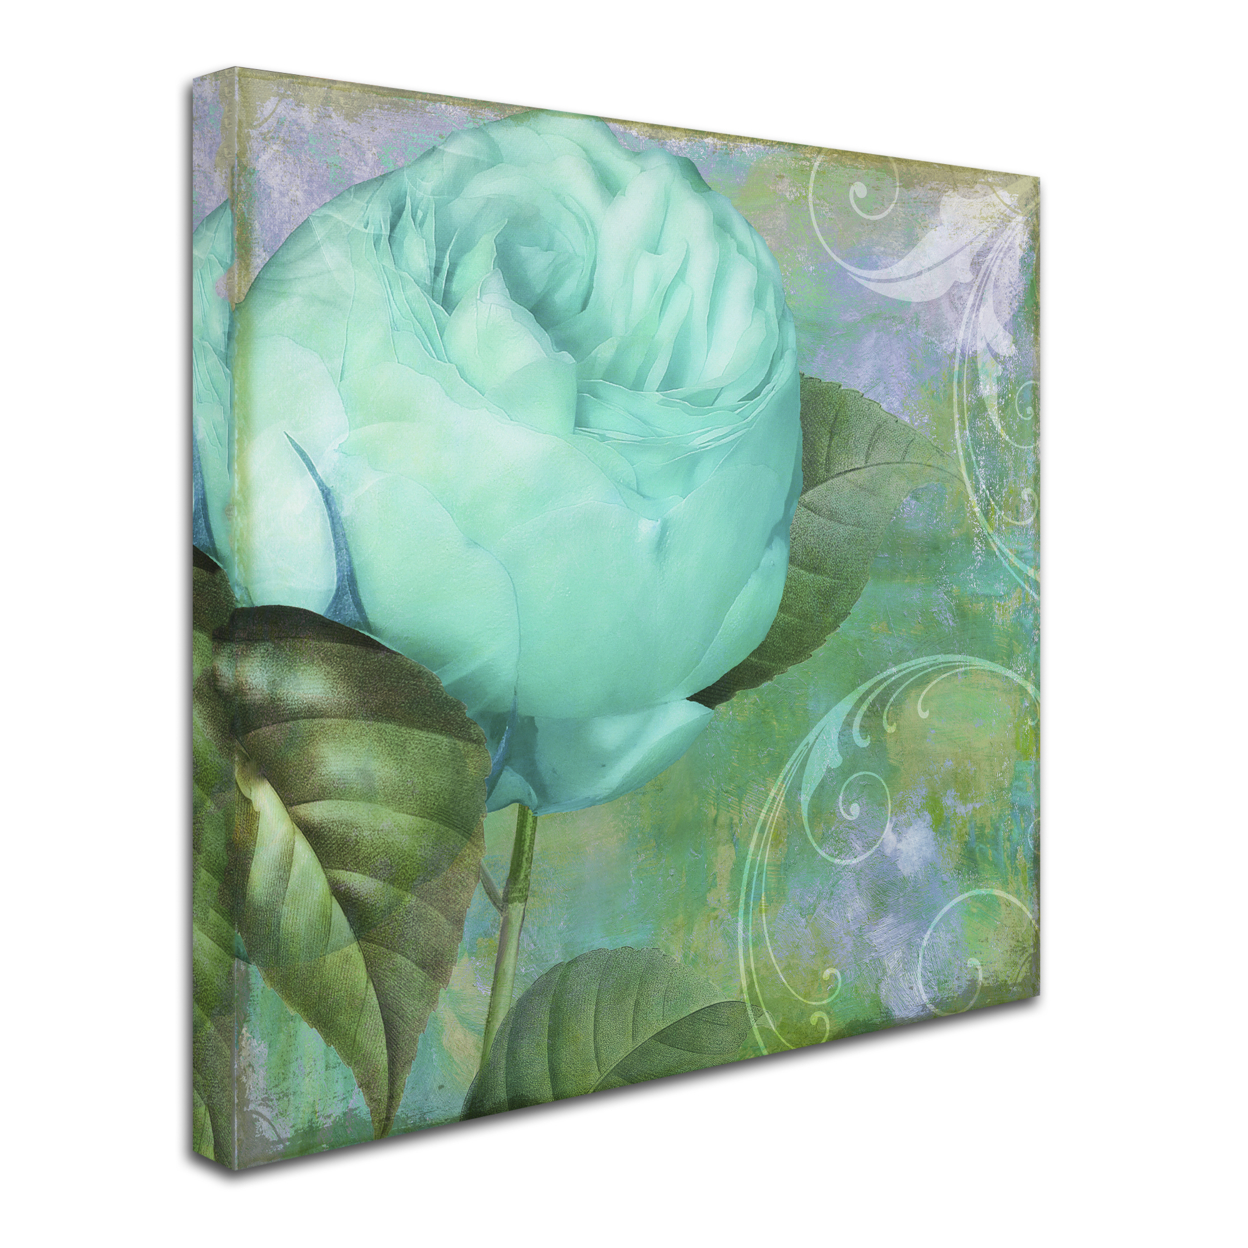 Color Bakery 'Aqua Rose I' Huge Canvas Art 35 X 35